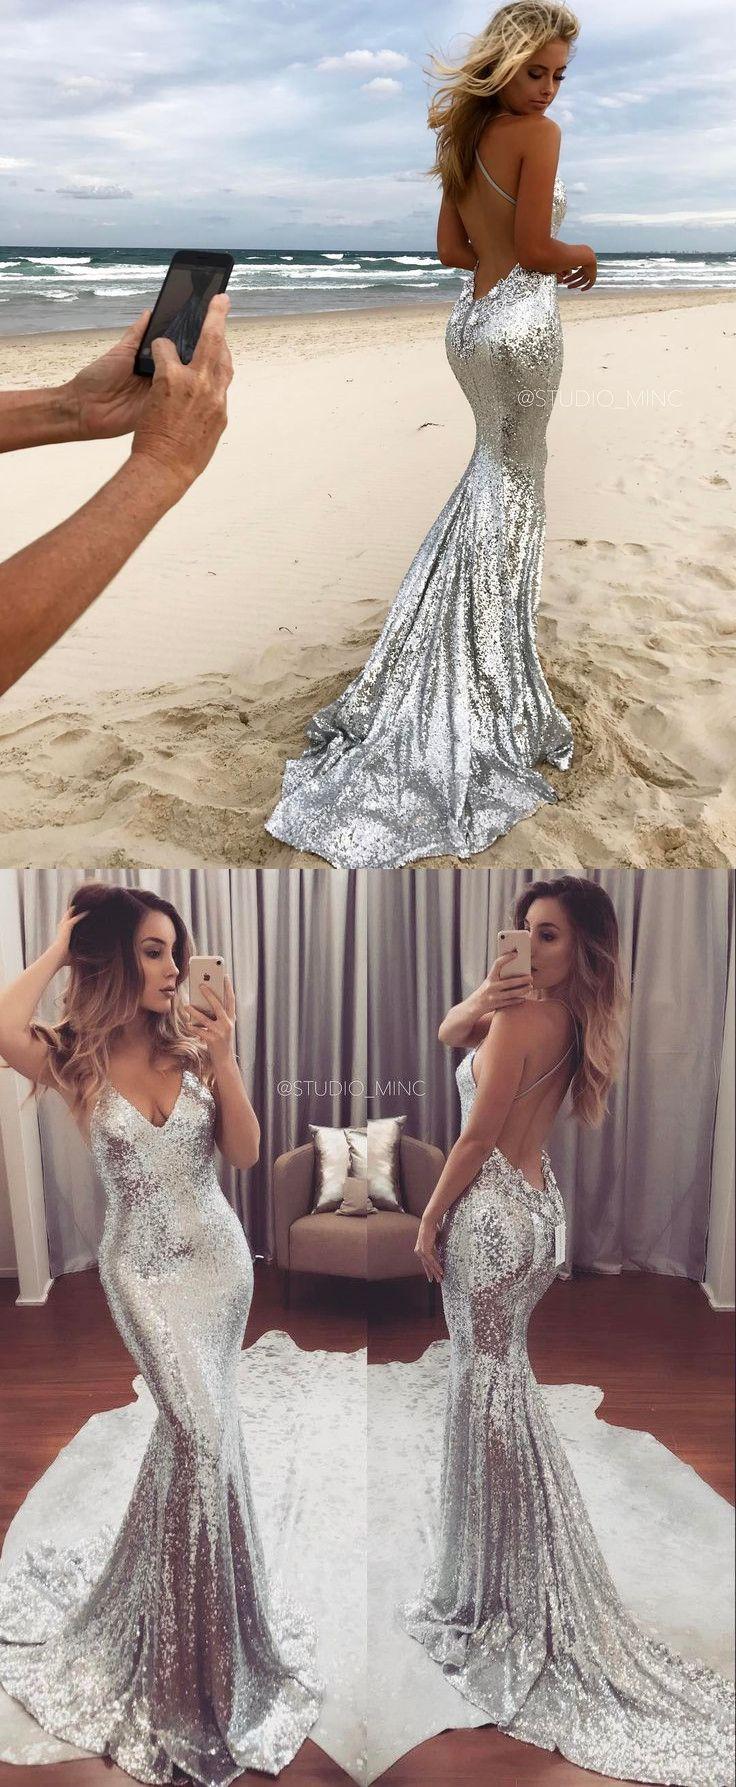 زفاف - Silver Prom Dress,Sexy Prom Dress,Sequined Prom Dresses,Formal Gown,Evening Gowns,Sequin Prom Gown For Teens